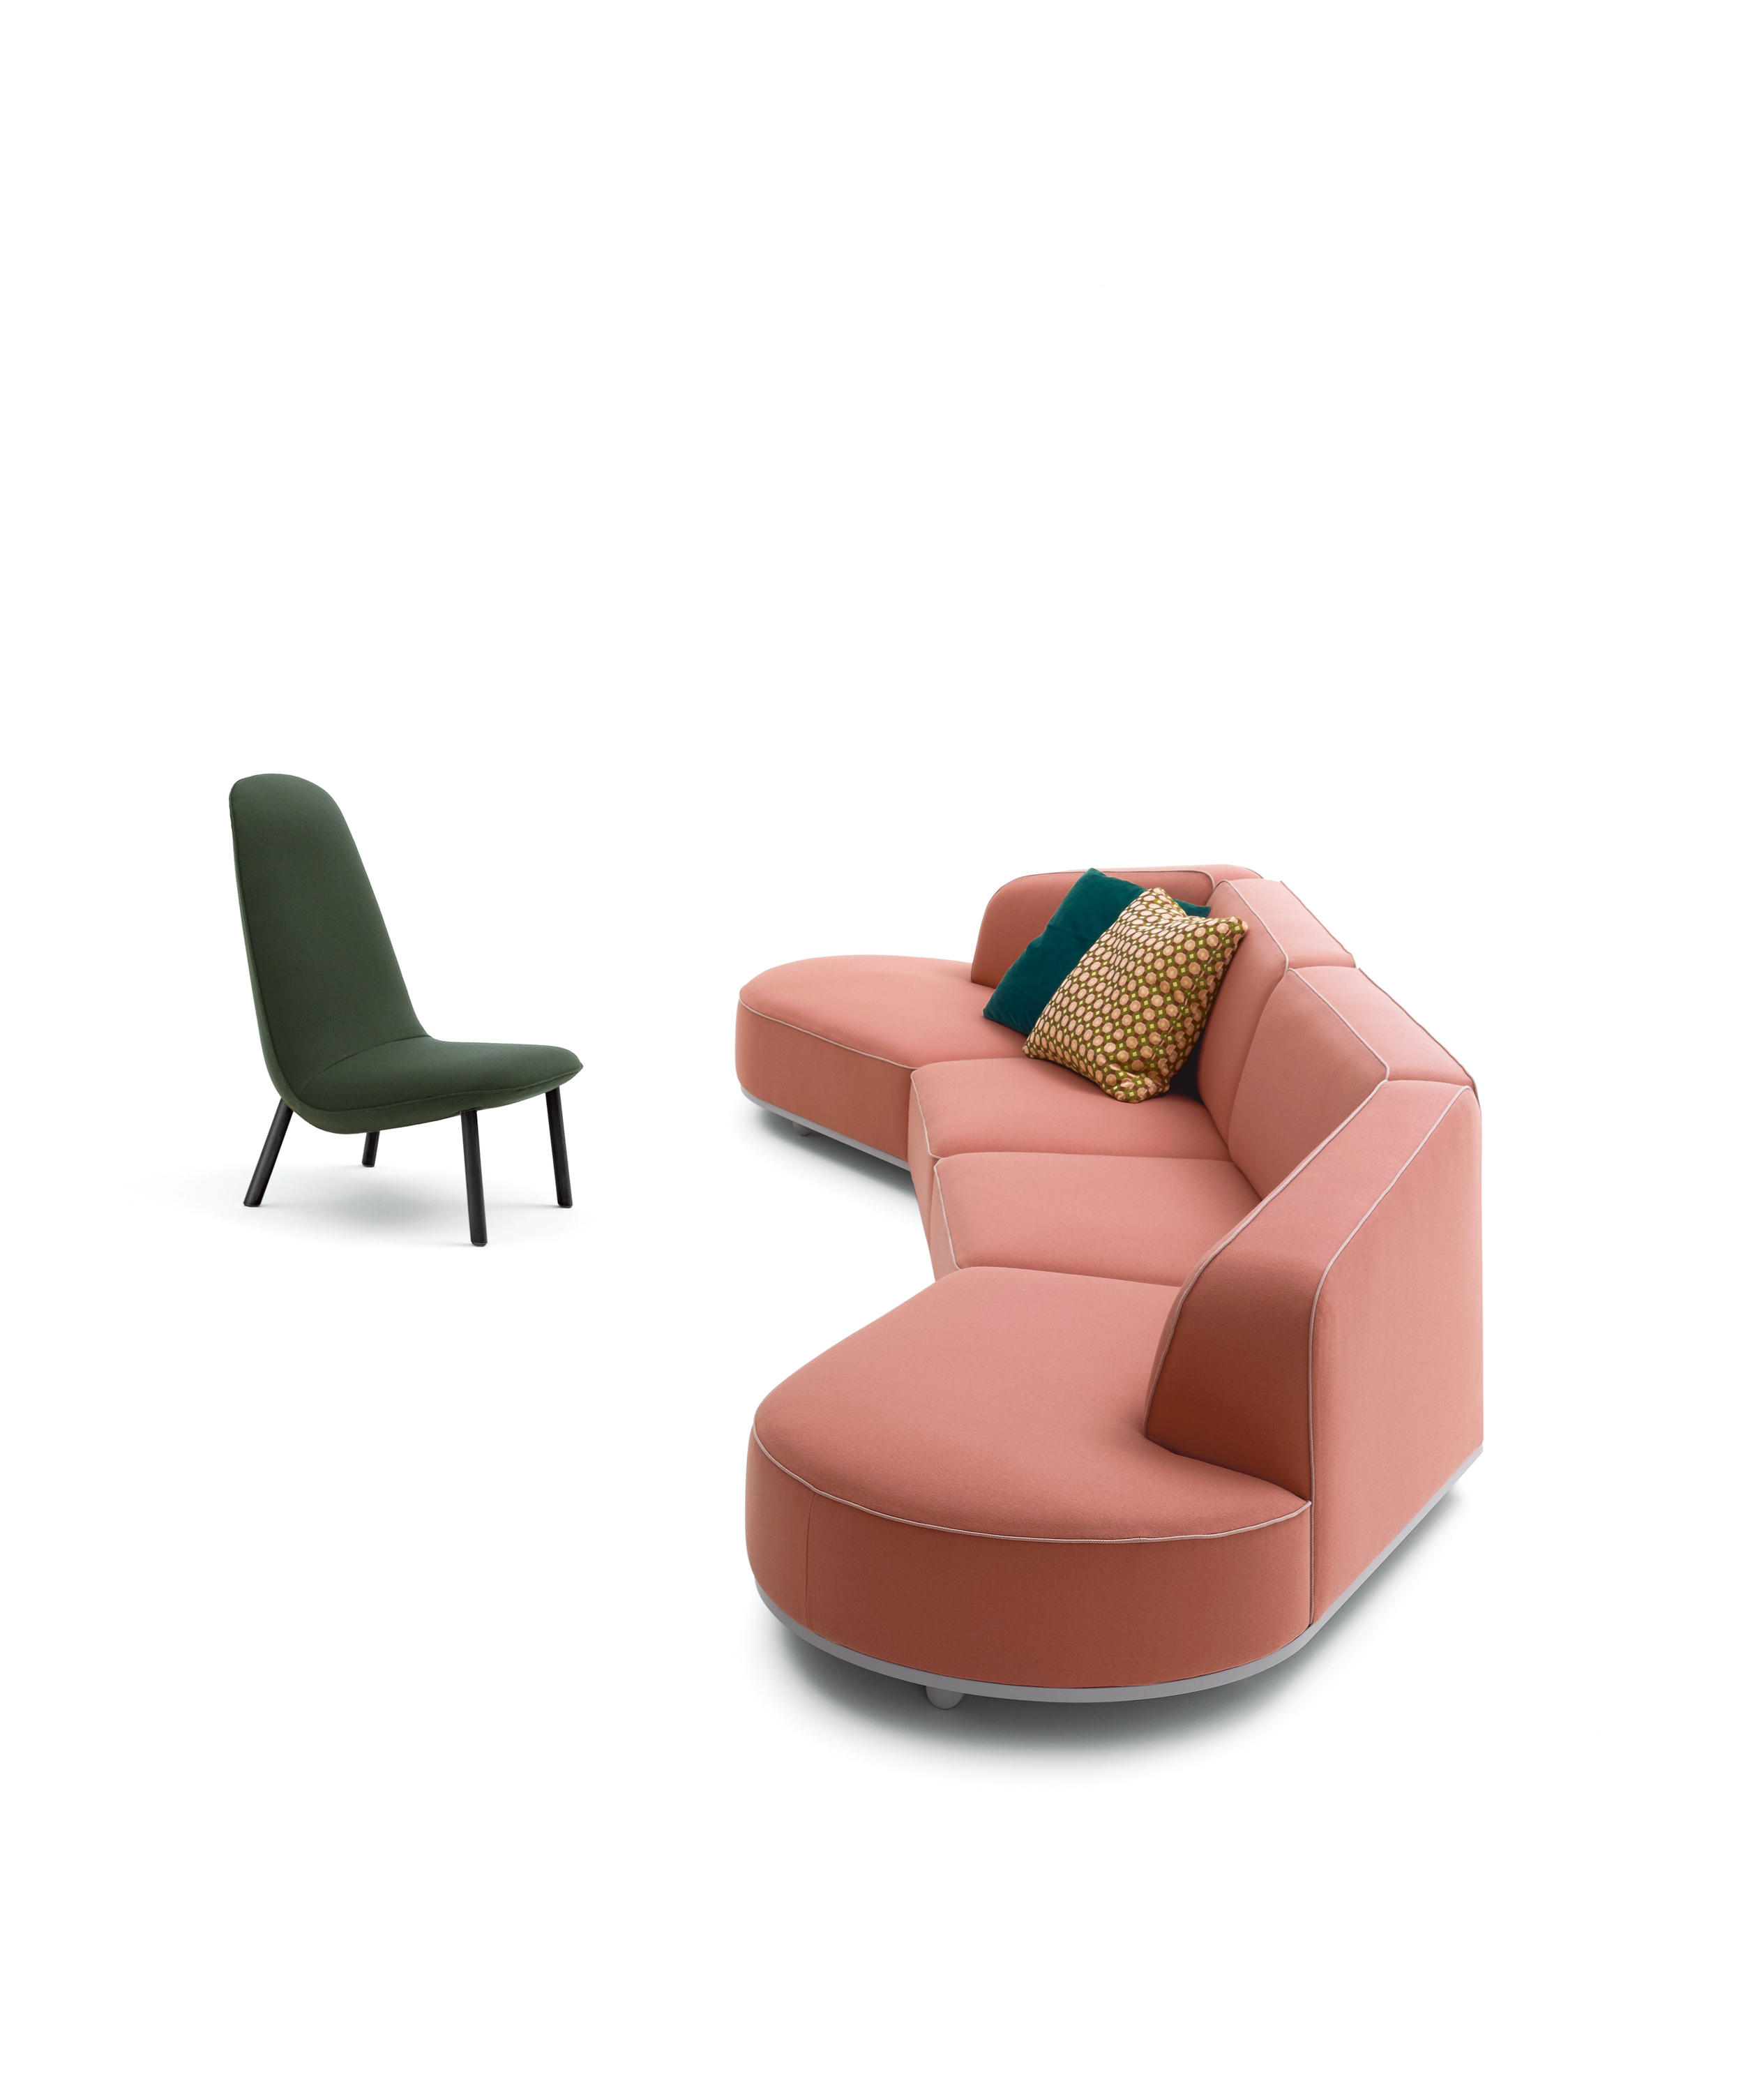 Leafo Armchair by Jaime Hayon for Arflex